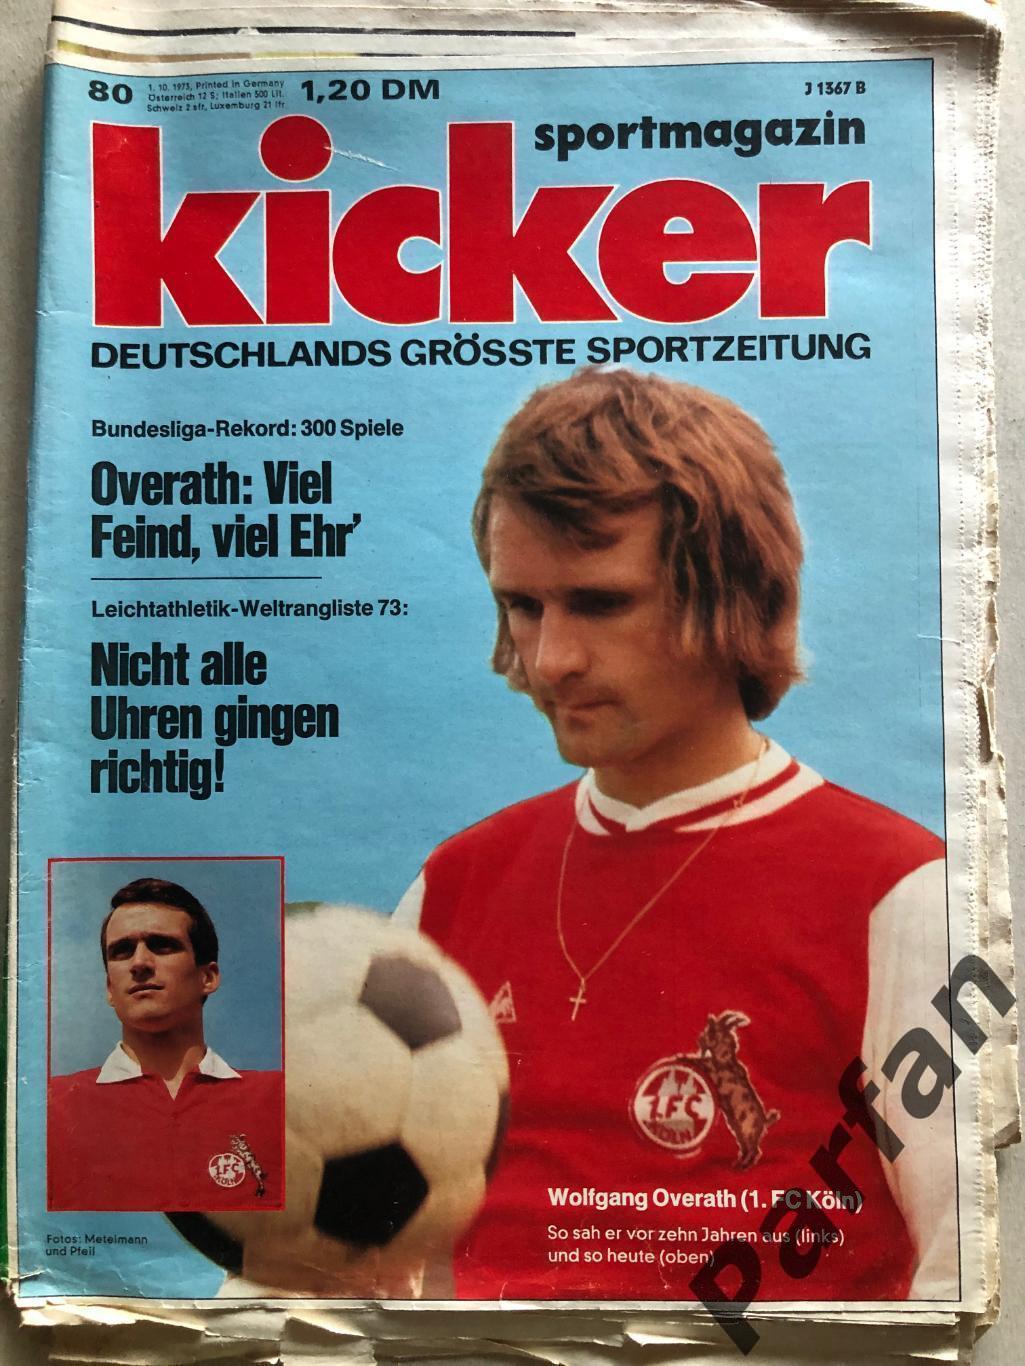 Kicker 1973 №80